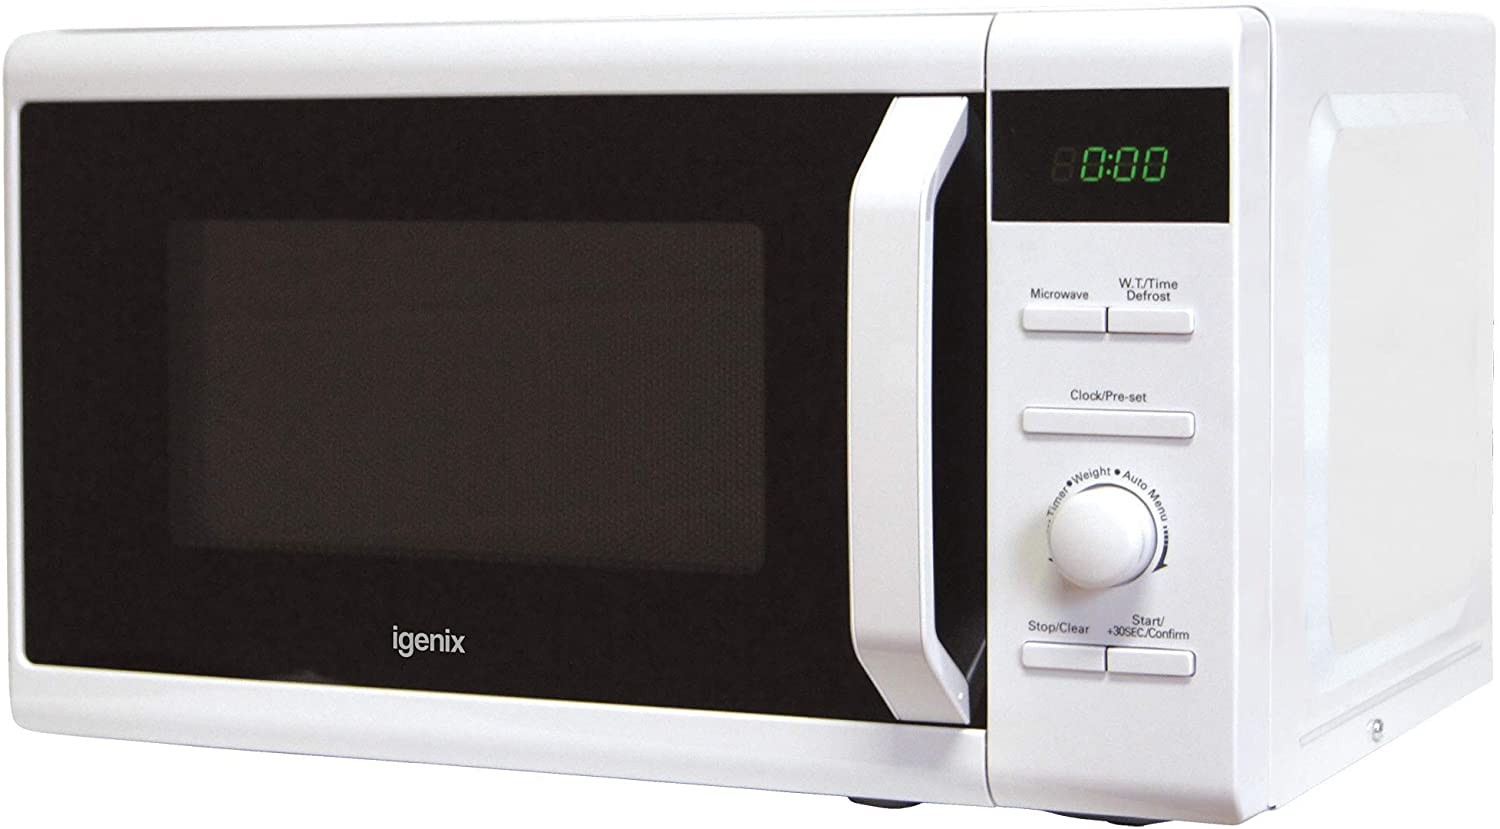 Igenix 800W 20L Microwave White